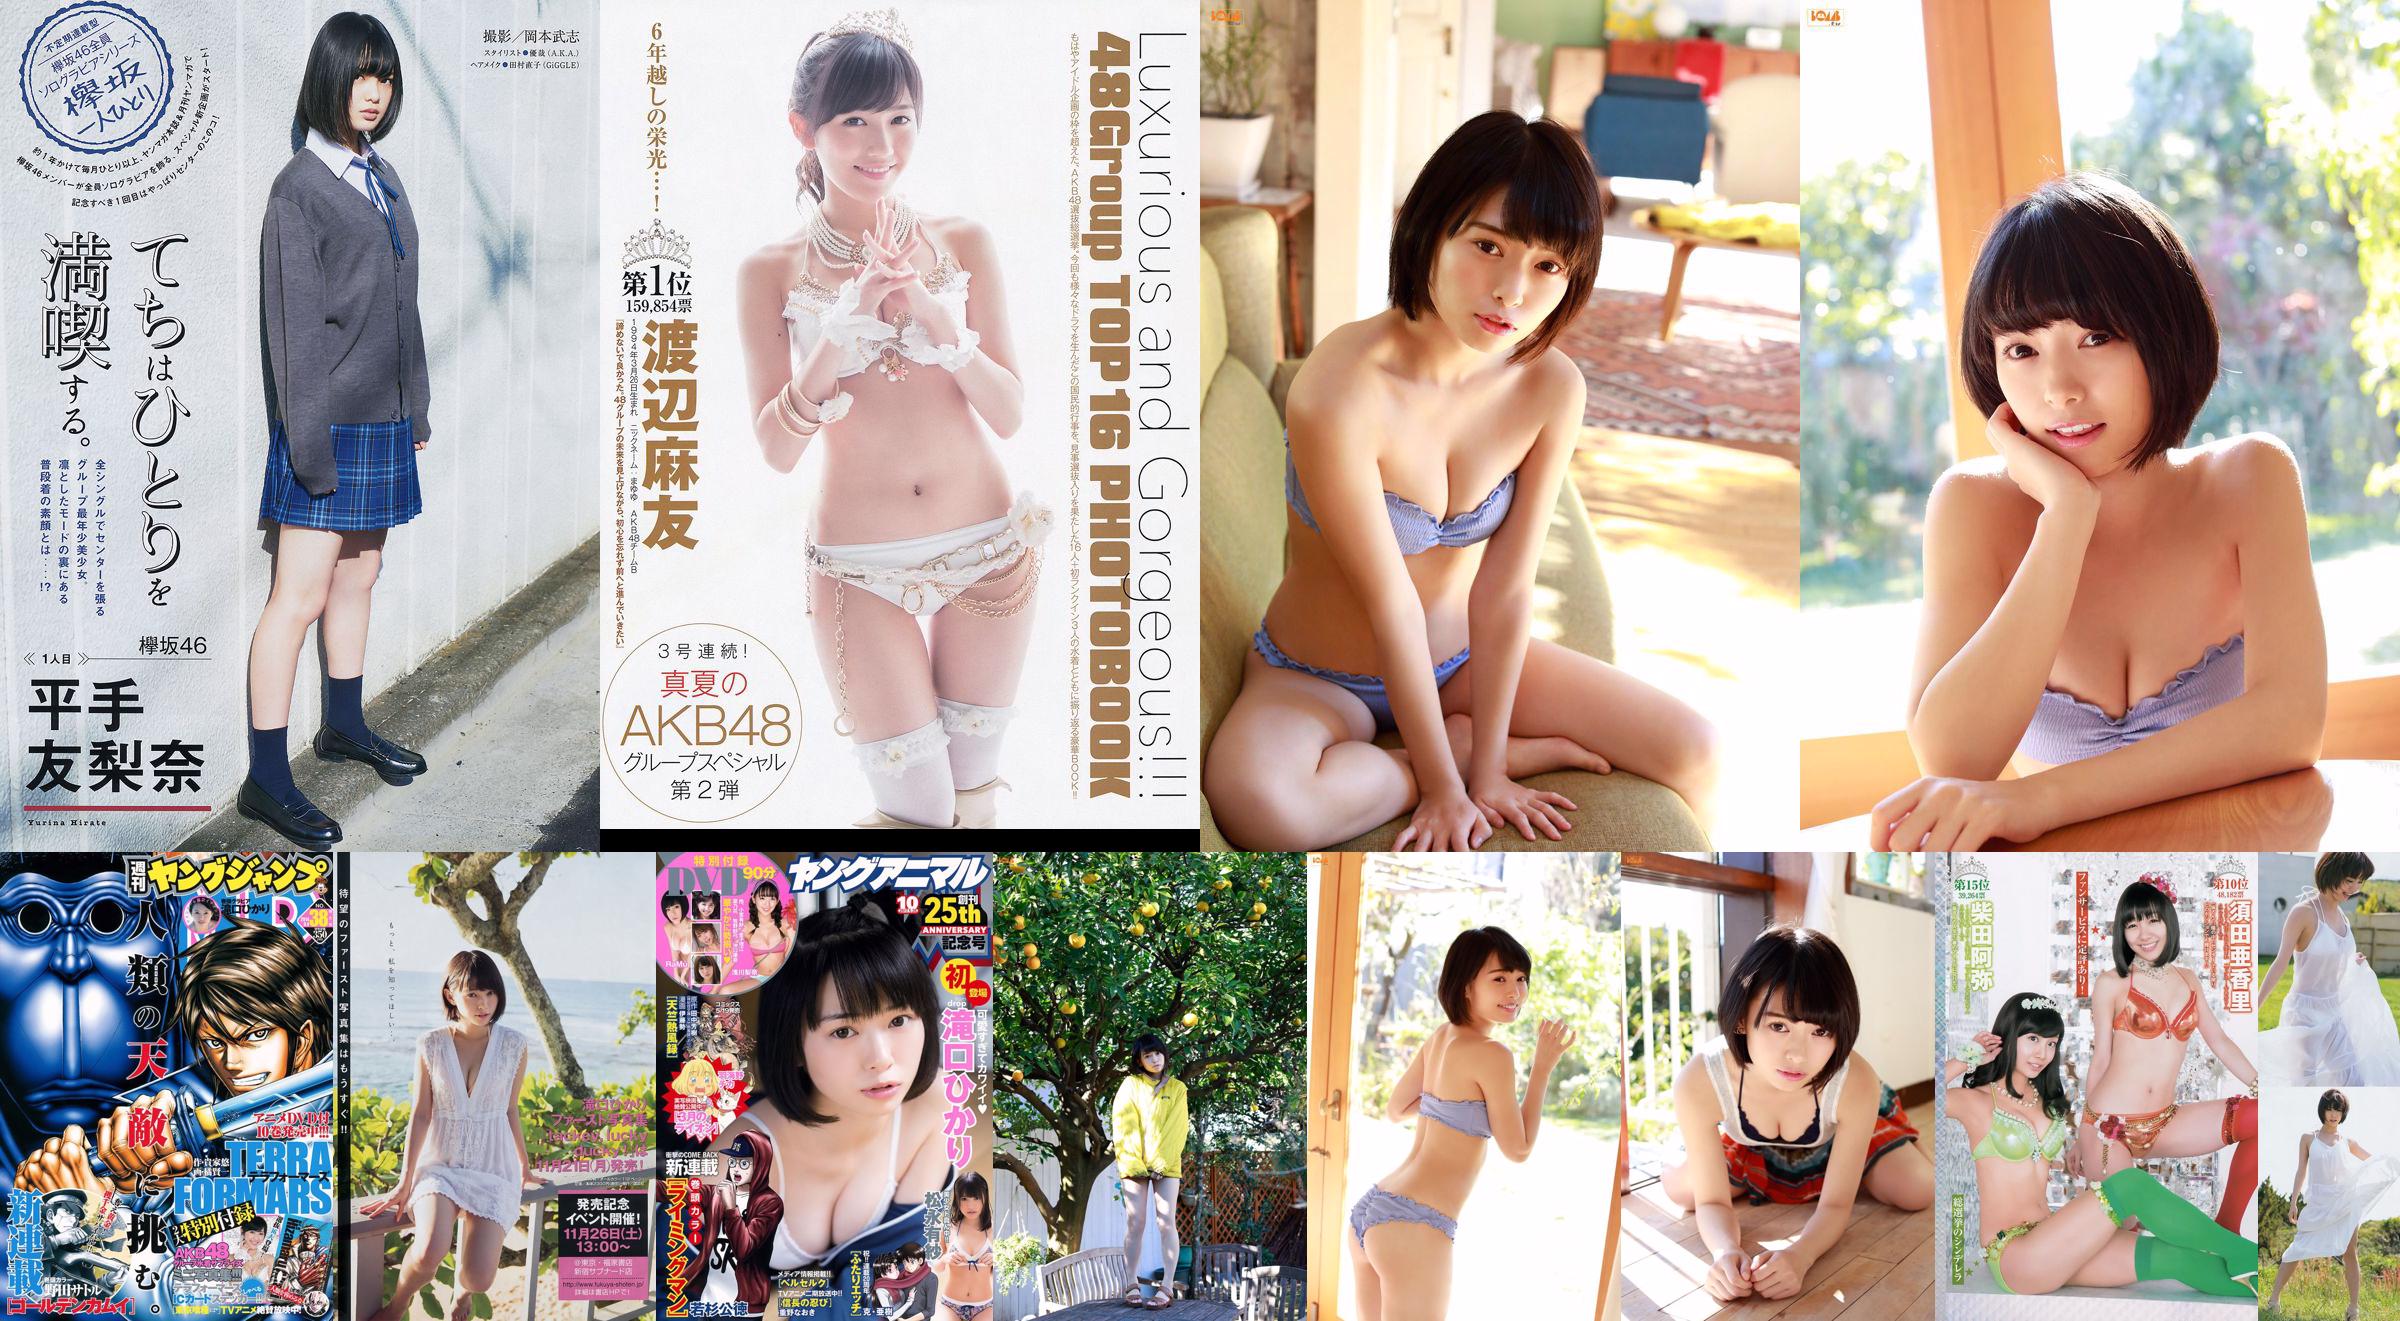 Hikari Takiguchi Hinako Kinoshita AKB48 Nonoka Ono [Saut hebdomadaire des jeunes] 2014 No.38 Photo No.ab948f Page 3